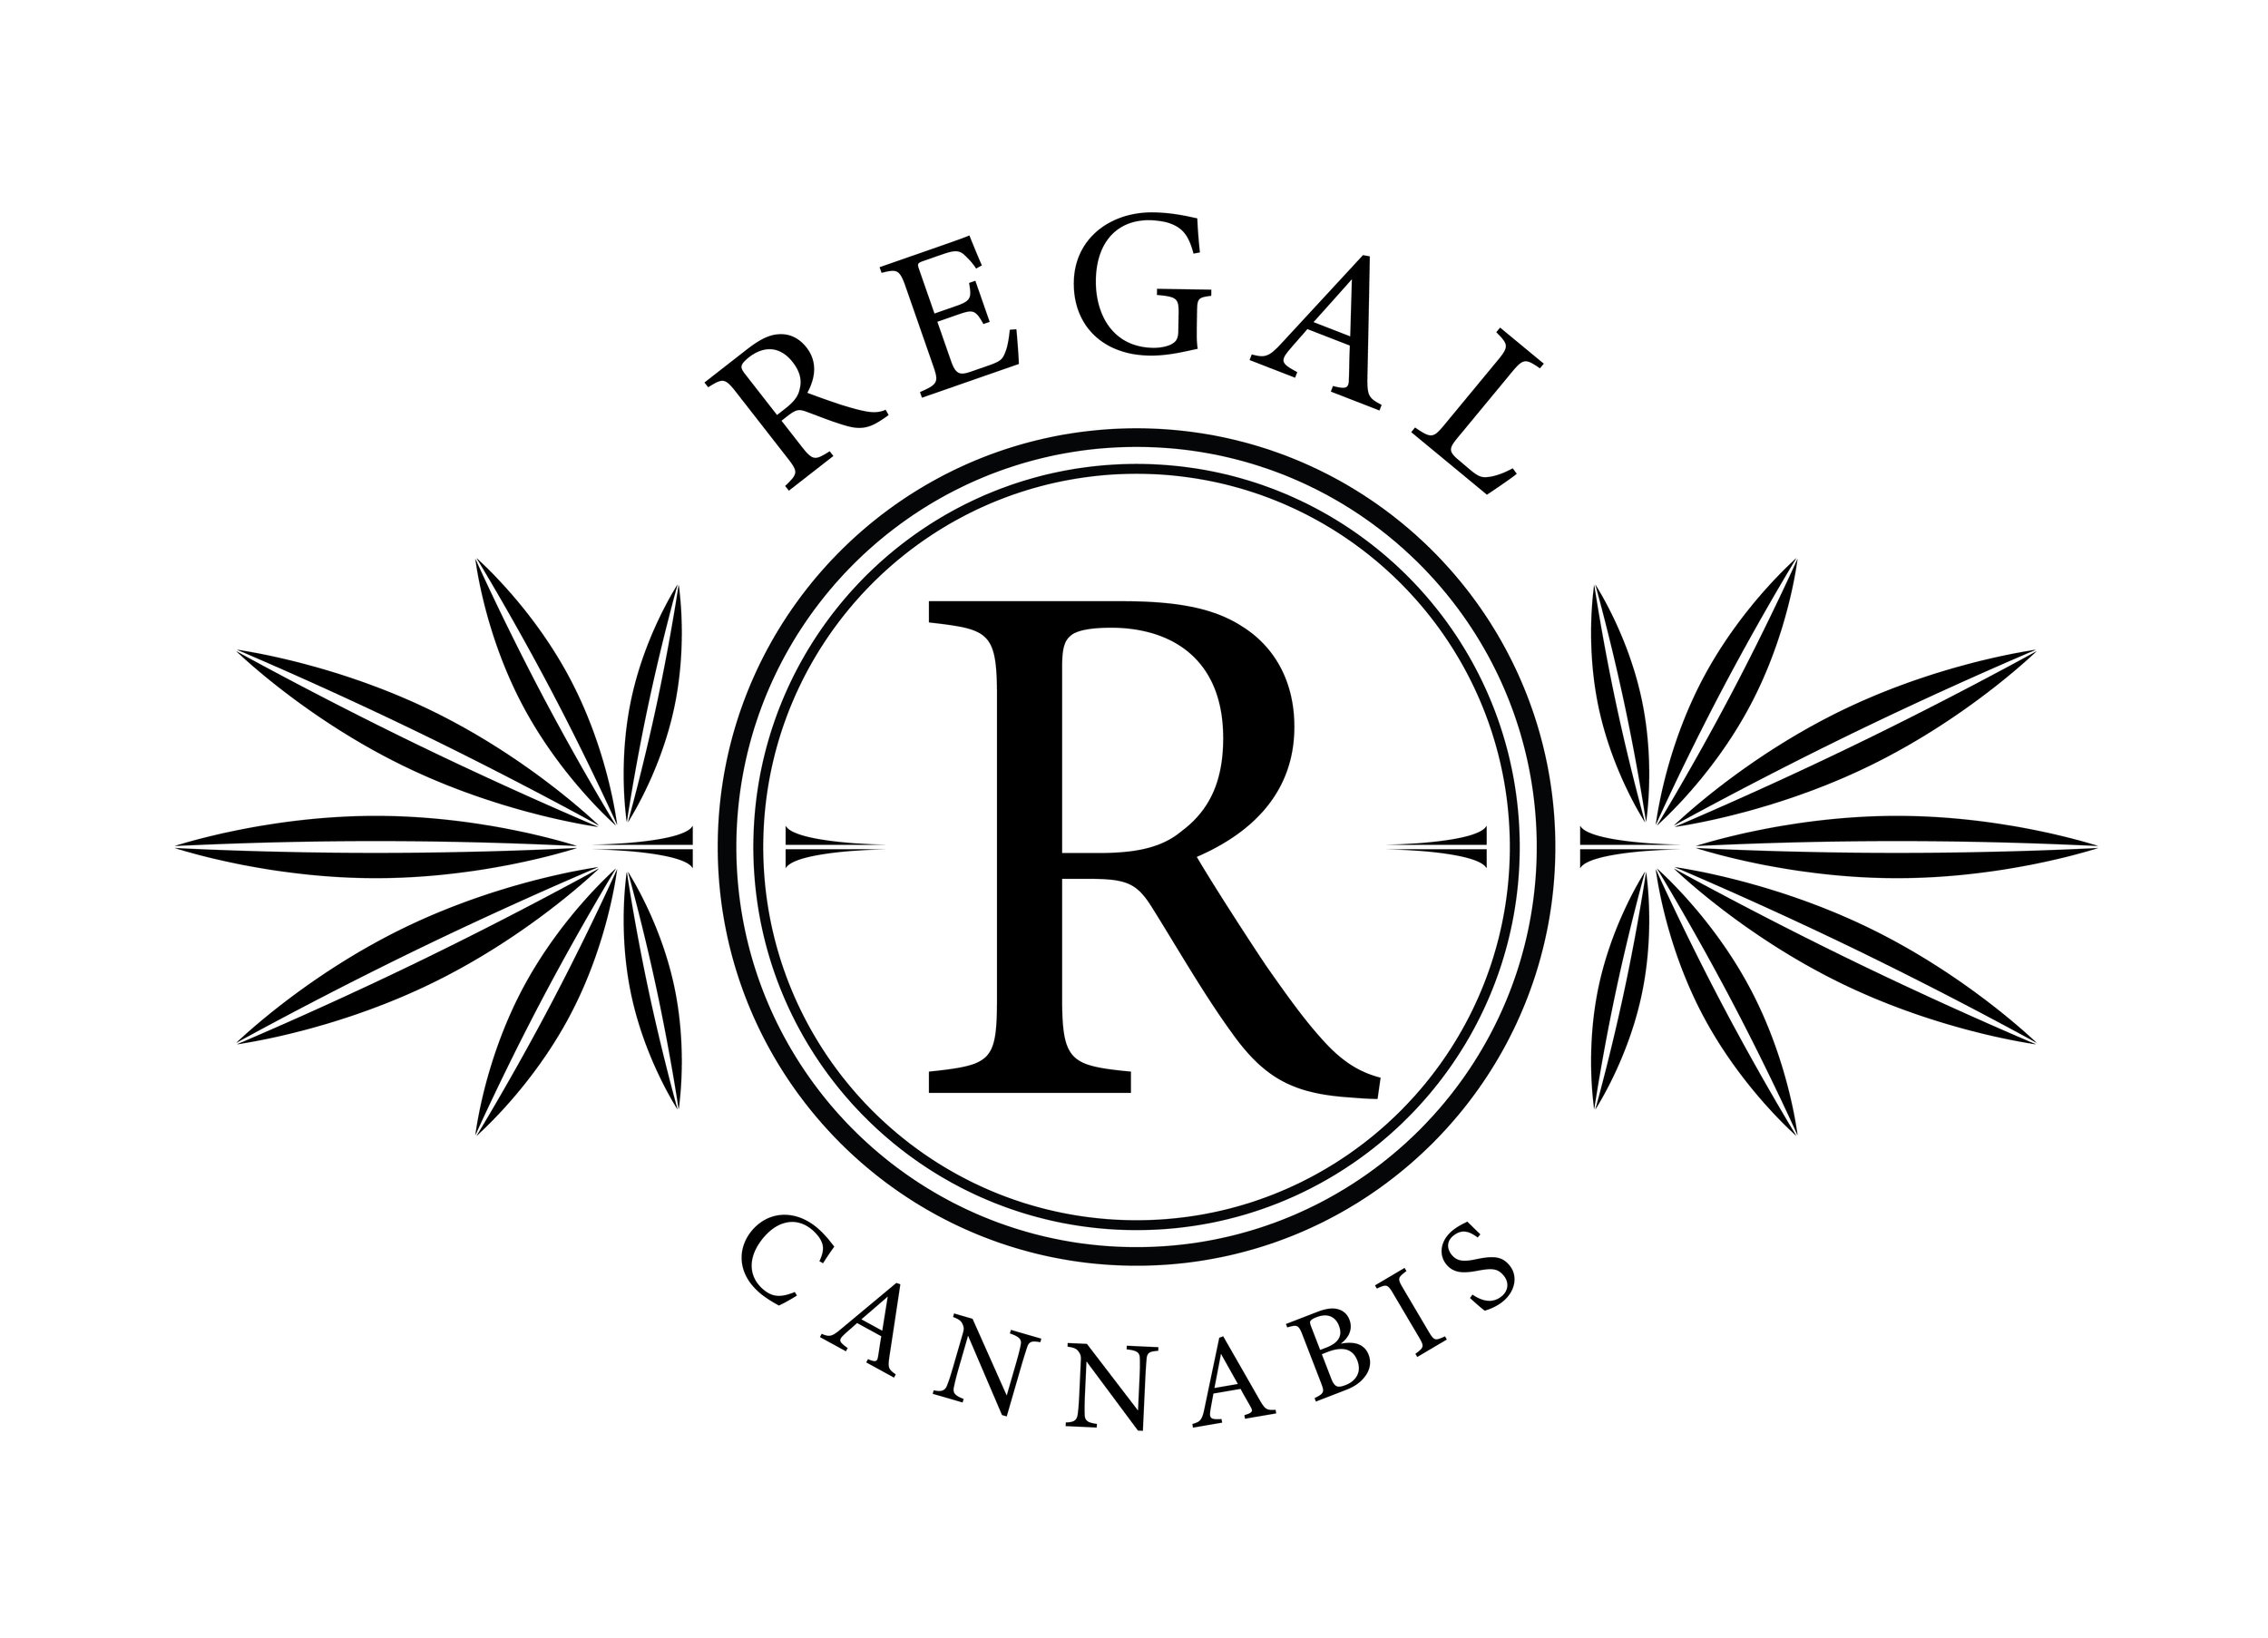 Regal Cannabis BW.jpg